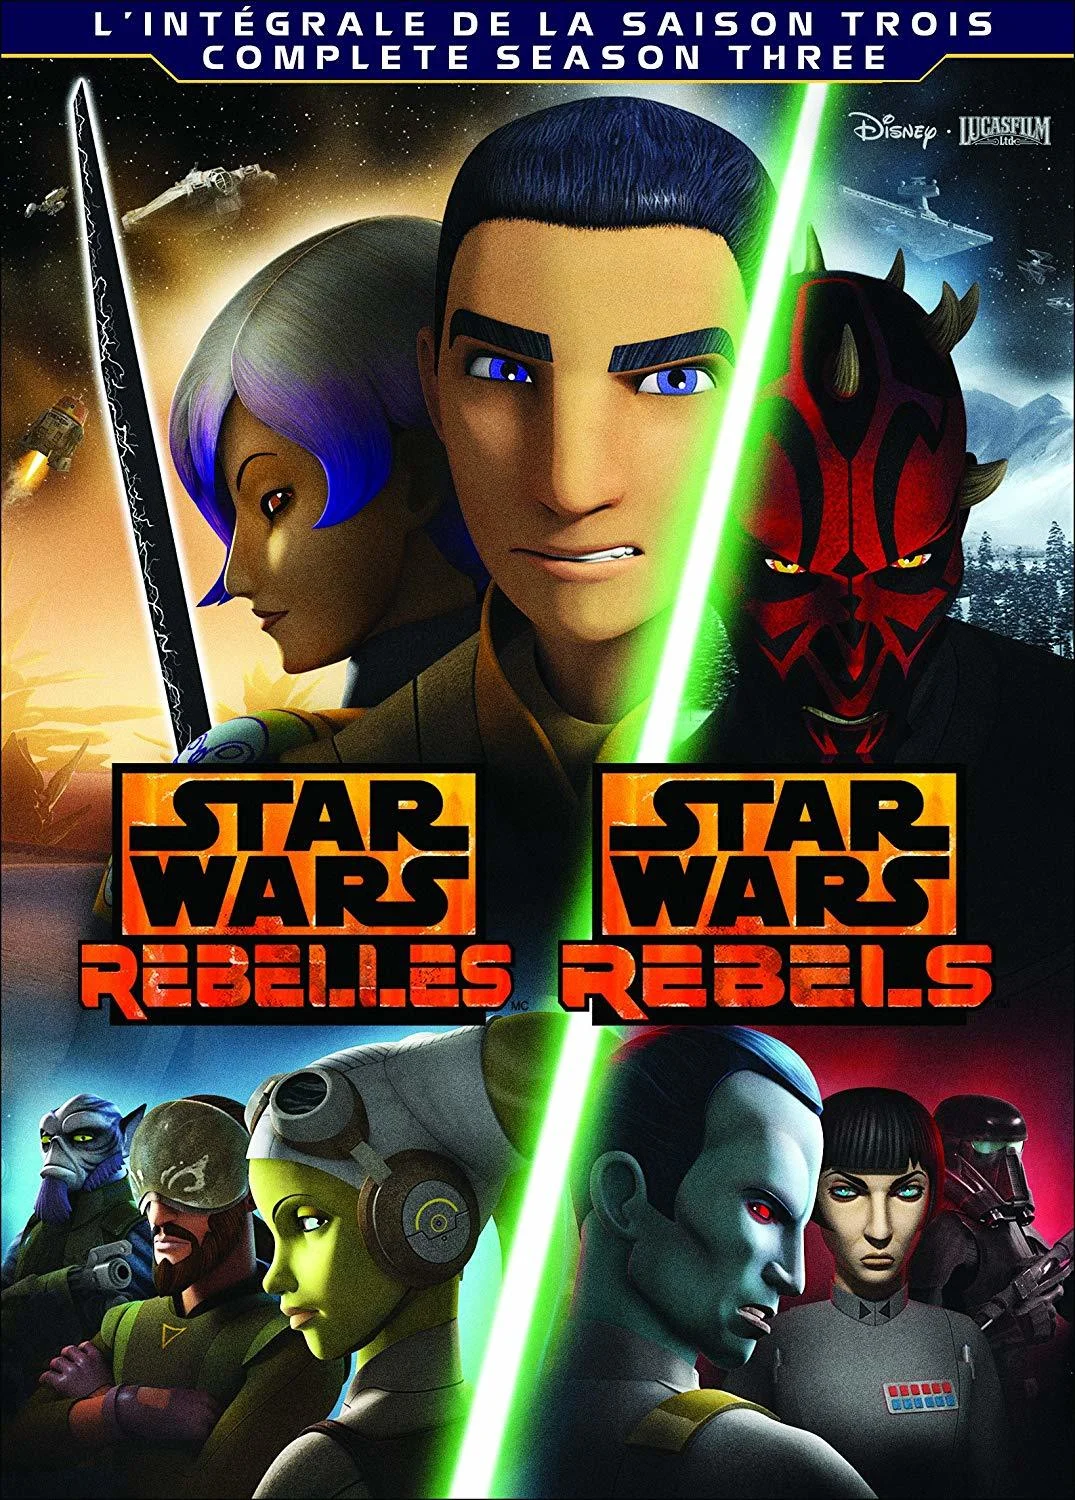 Star Wars Rebels: S3 (DVD) – Bilingual on MovieShack